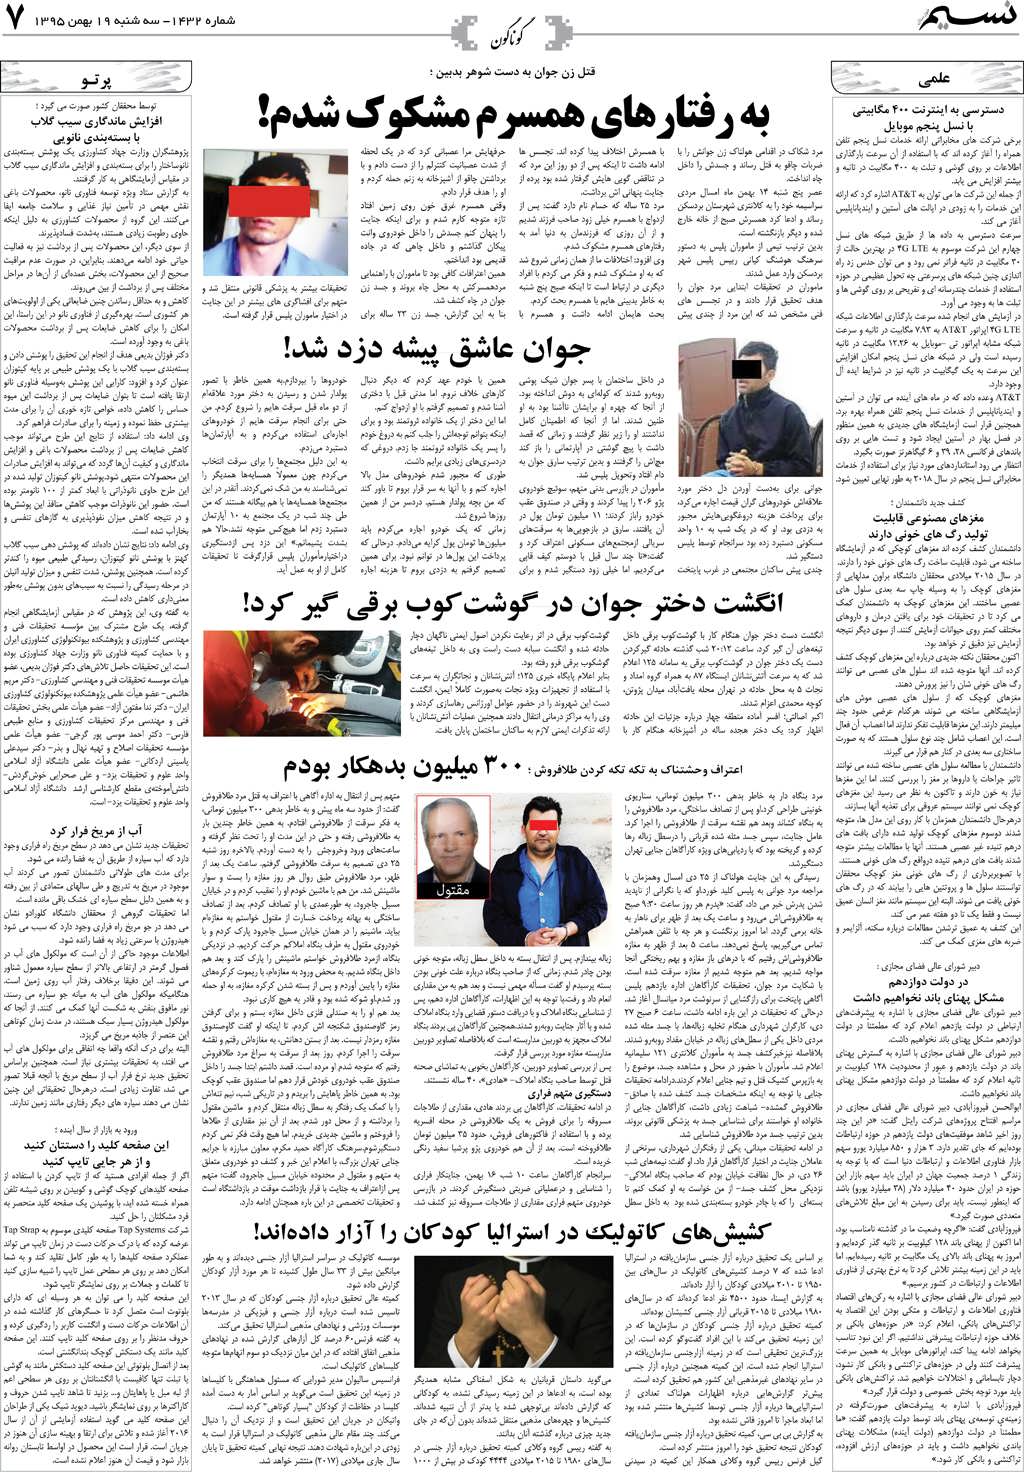 صفحه گوناگون روزنامه نسیم شماره 1432